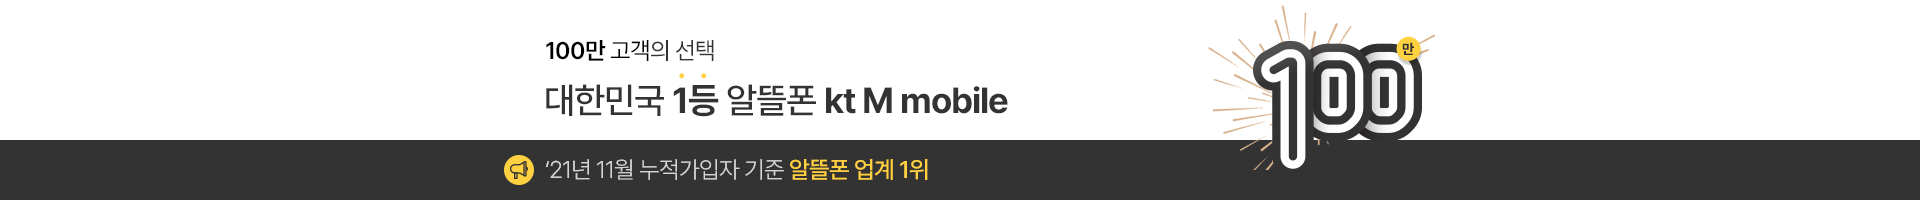 100만 고객의 선택 대한민국 1등 알뜰폰 kt M mobile ‘21년 11월 누적가입자 기준 알뜰폰 업계 1위